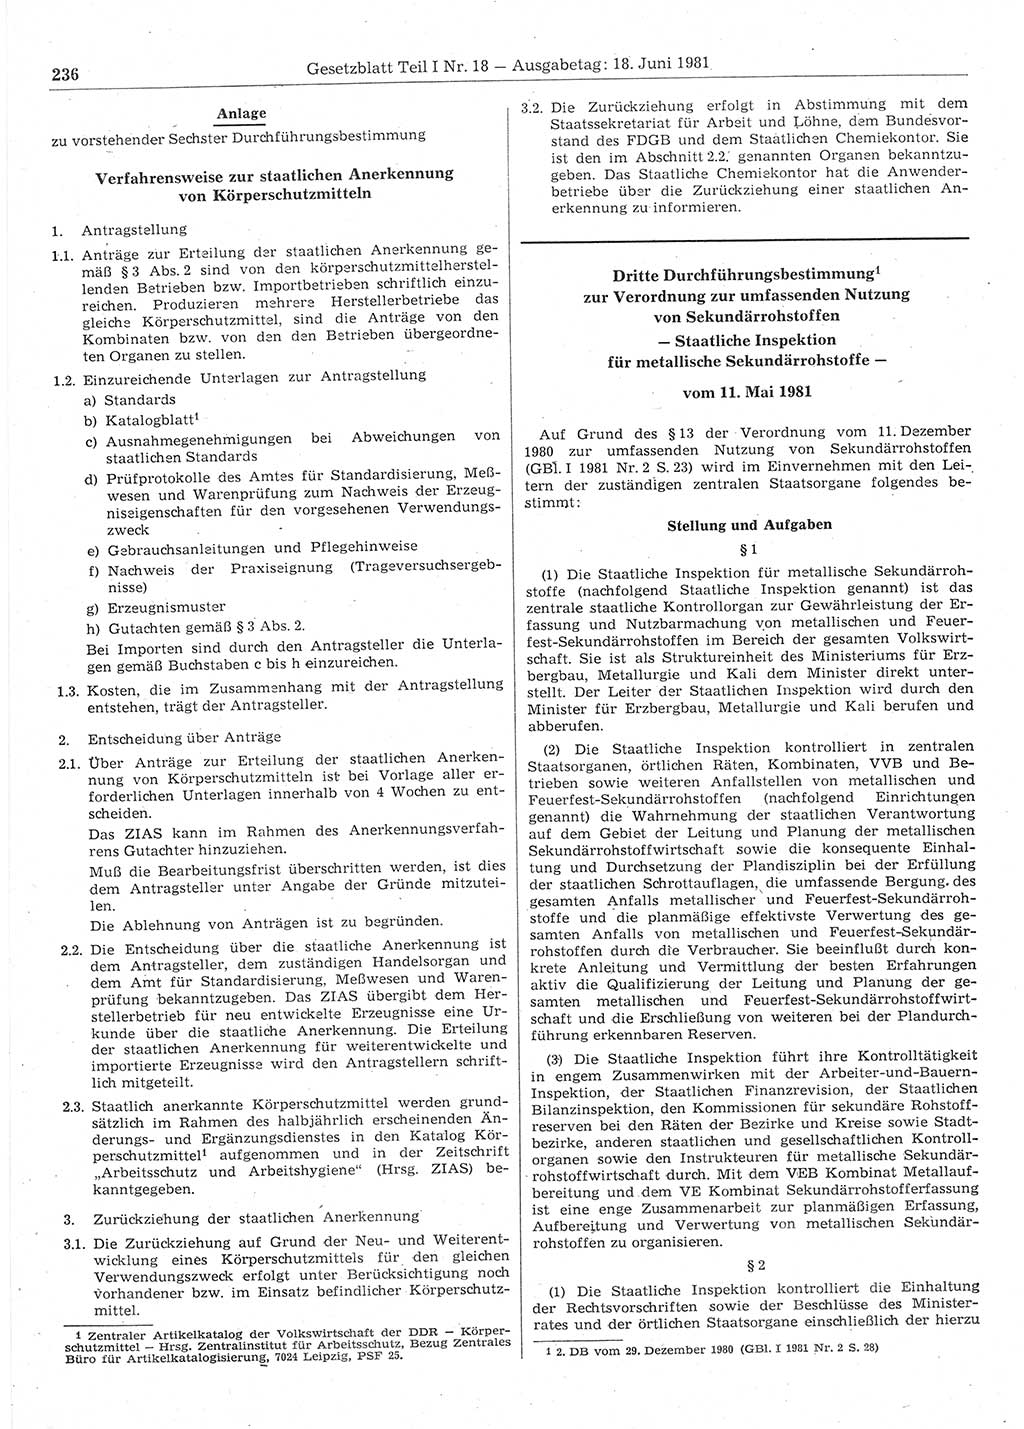 Gesetzblatt (GBl.) der Deutschen Demokratischen Republik (DDR) Teil Ⅰ 1981, Seite 236 (GBl. DDR Ⅰ 1981, S. 236)